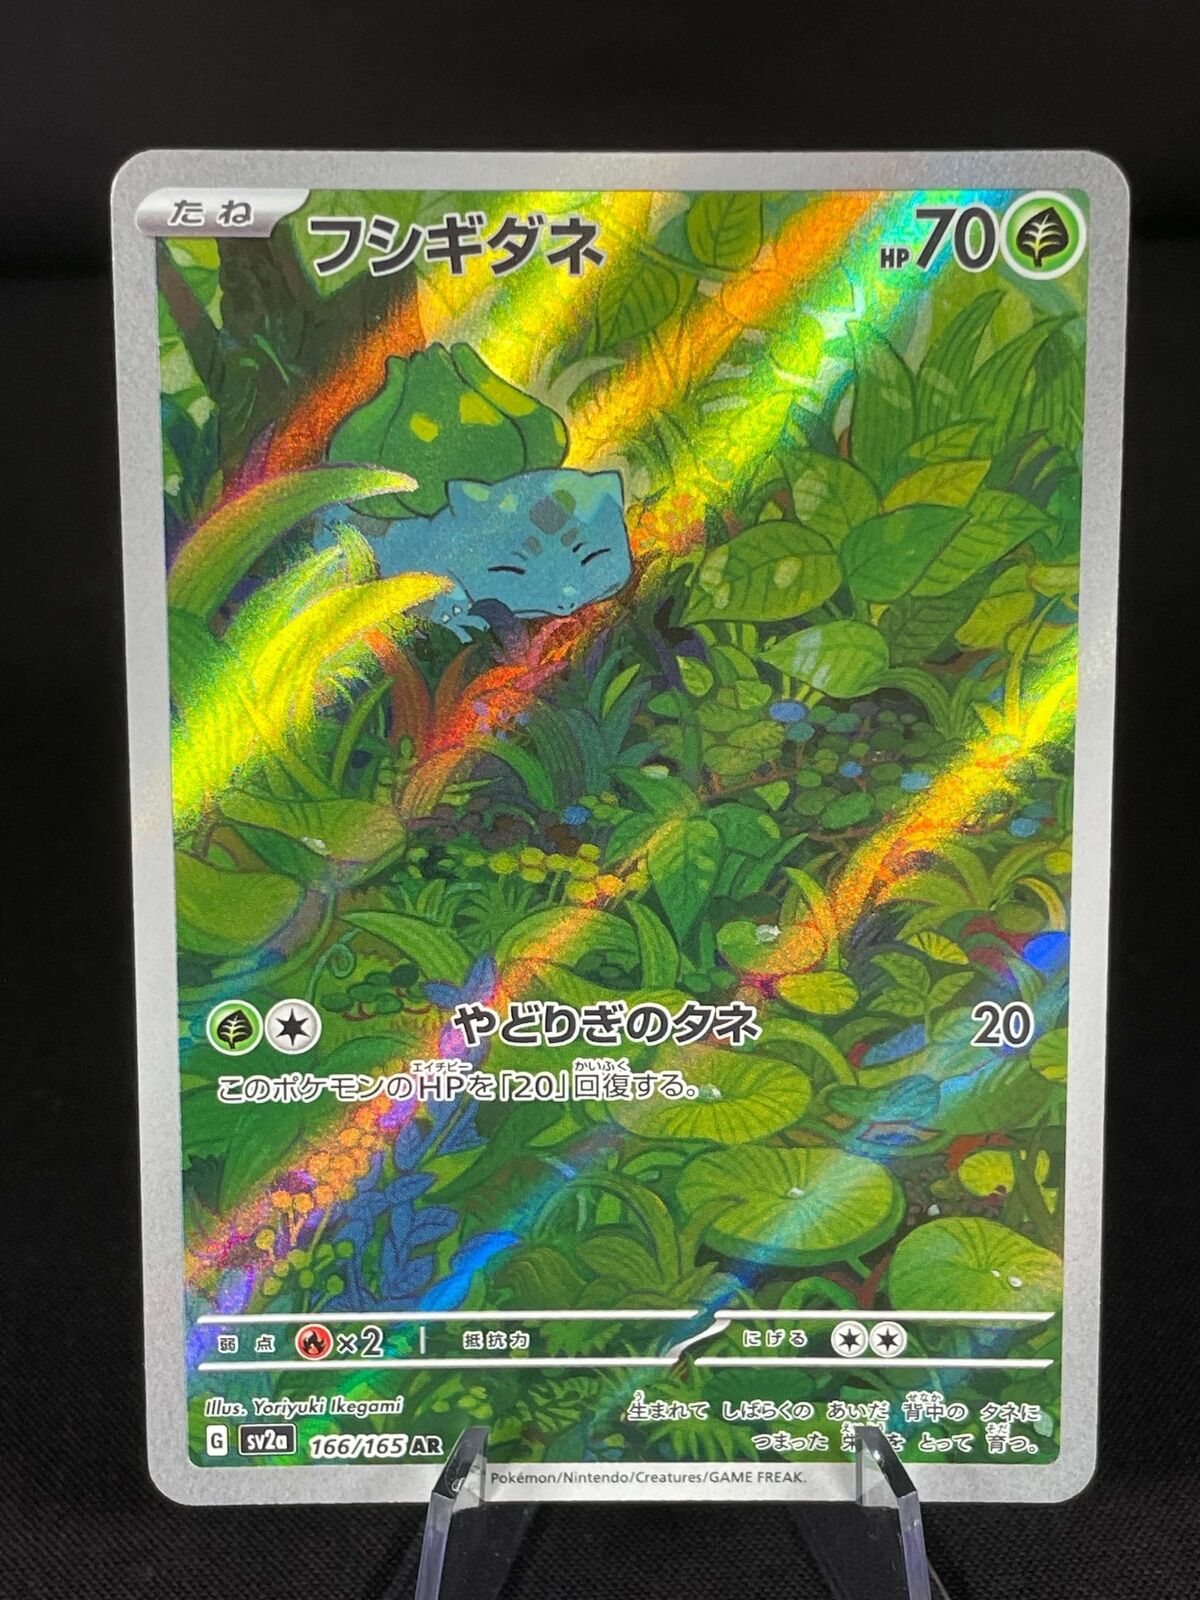 Bulbasaur - 166/165, Full Art - Pokemon 151 Japanese - NM/M - Pack Fresh